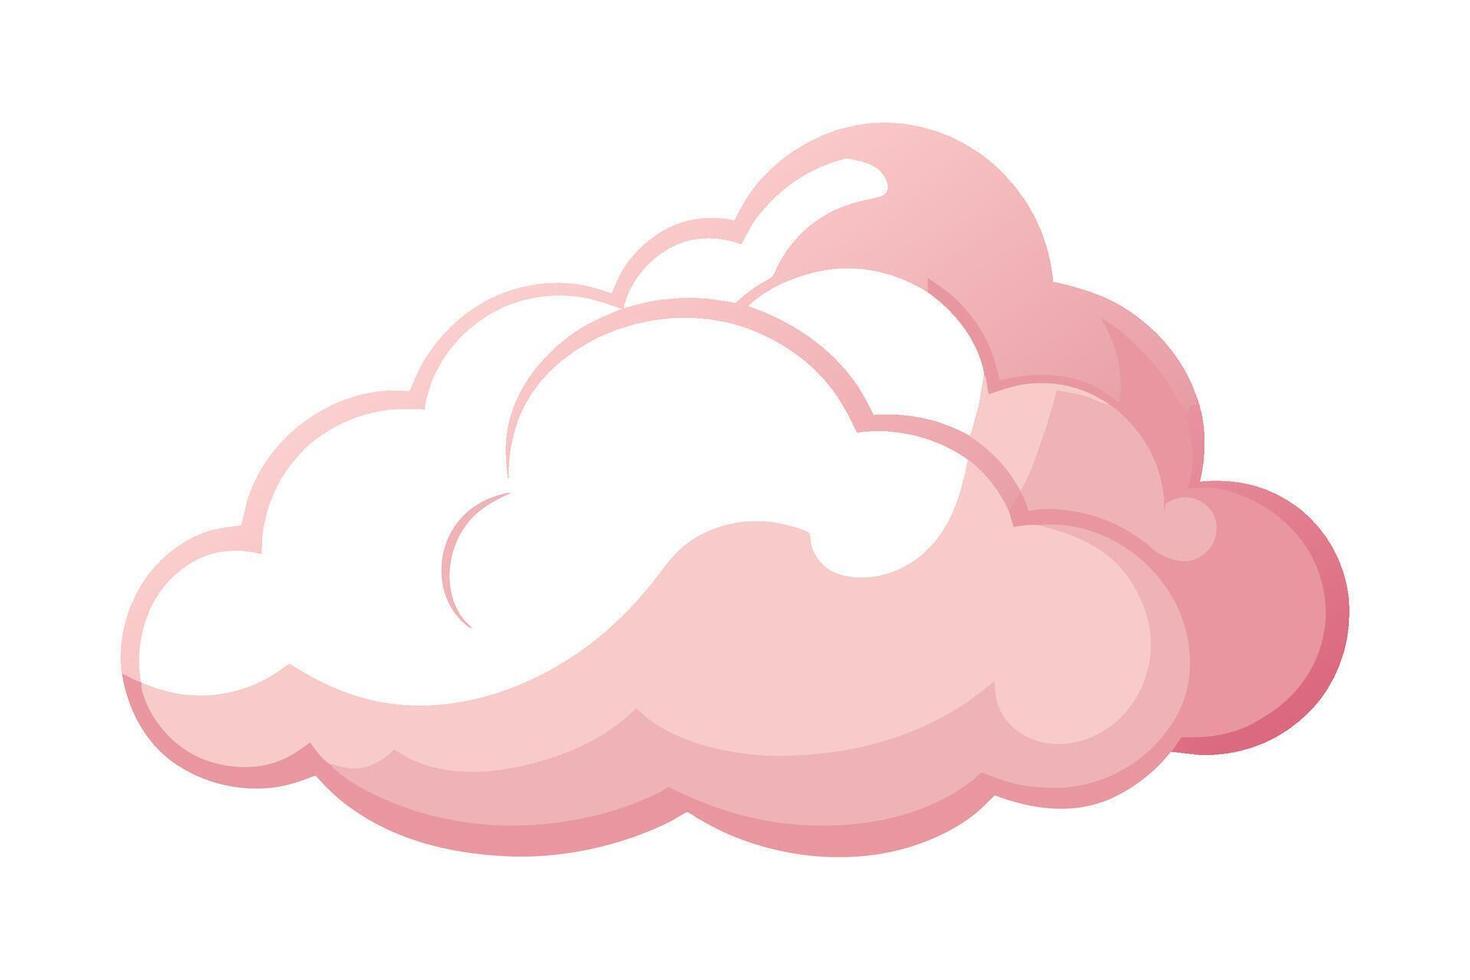 Sanft Rosa Wolken ausgeschnitten, eben Illustration vektor